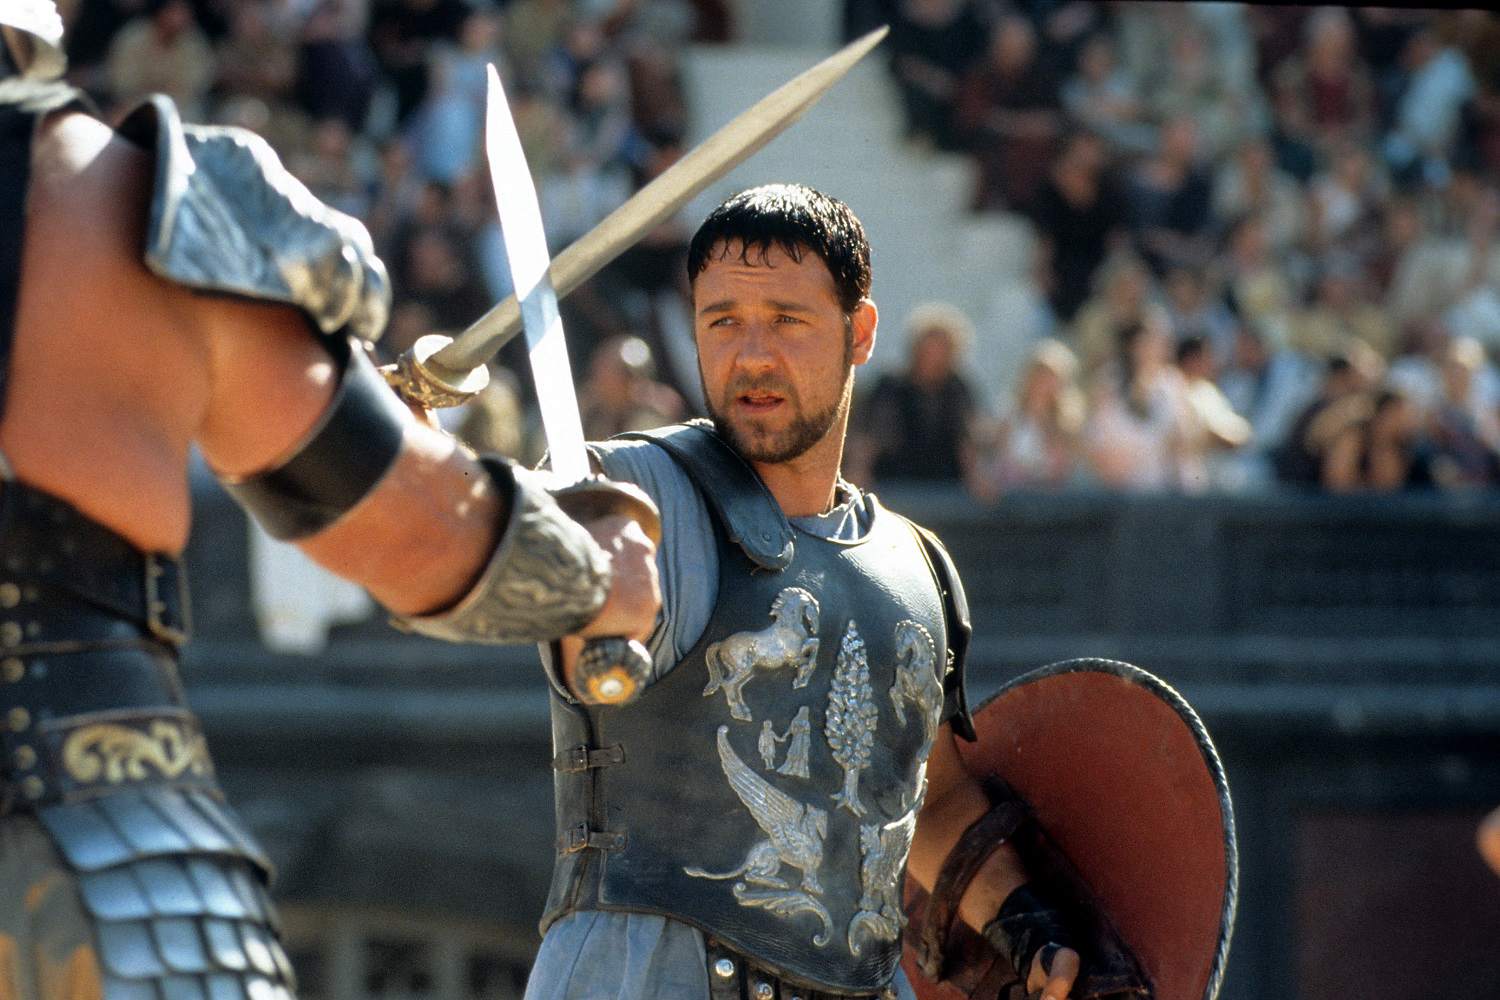 Een foto van een scène uit de film Gladiator, met de hoofdpersoon Maximus gespeeld door Russell Crowe.